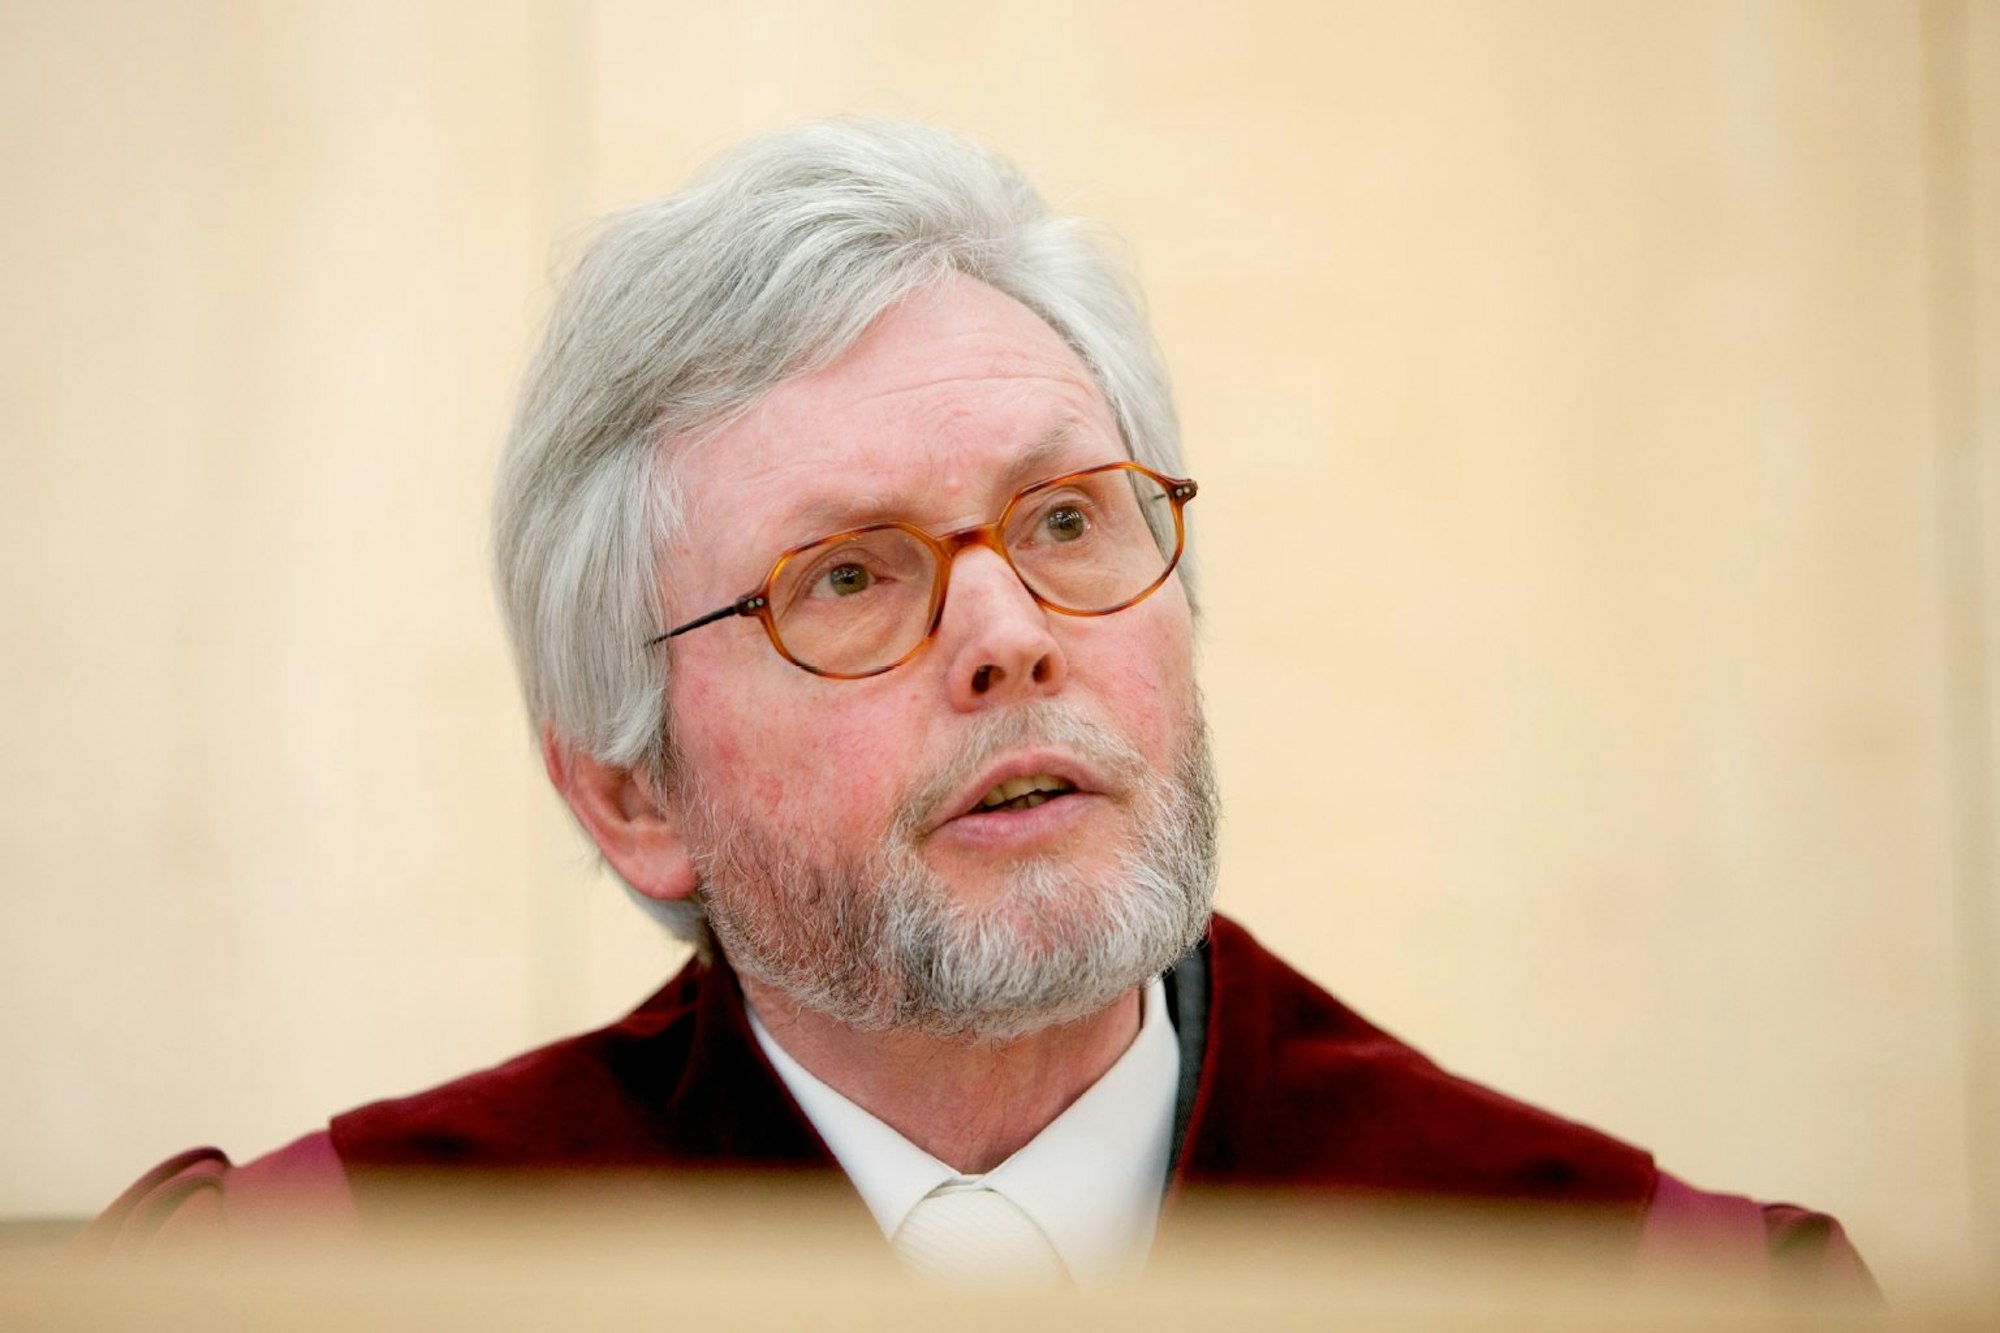 Michael Bertrams war von 1994 bis 2013 Präsident des Verfassungsgerichtshofs NRW. Er schreibt im „Kölner Stadt-Anzeiger“ über aktuelle Streitfälle sowie rechtspolitische und gesellschaftliche Entwicklungen.